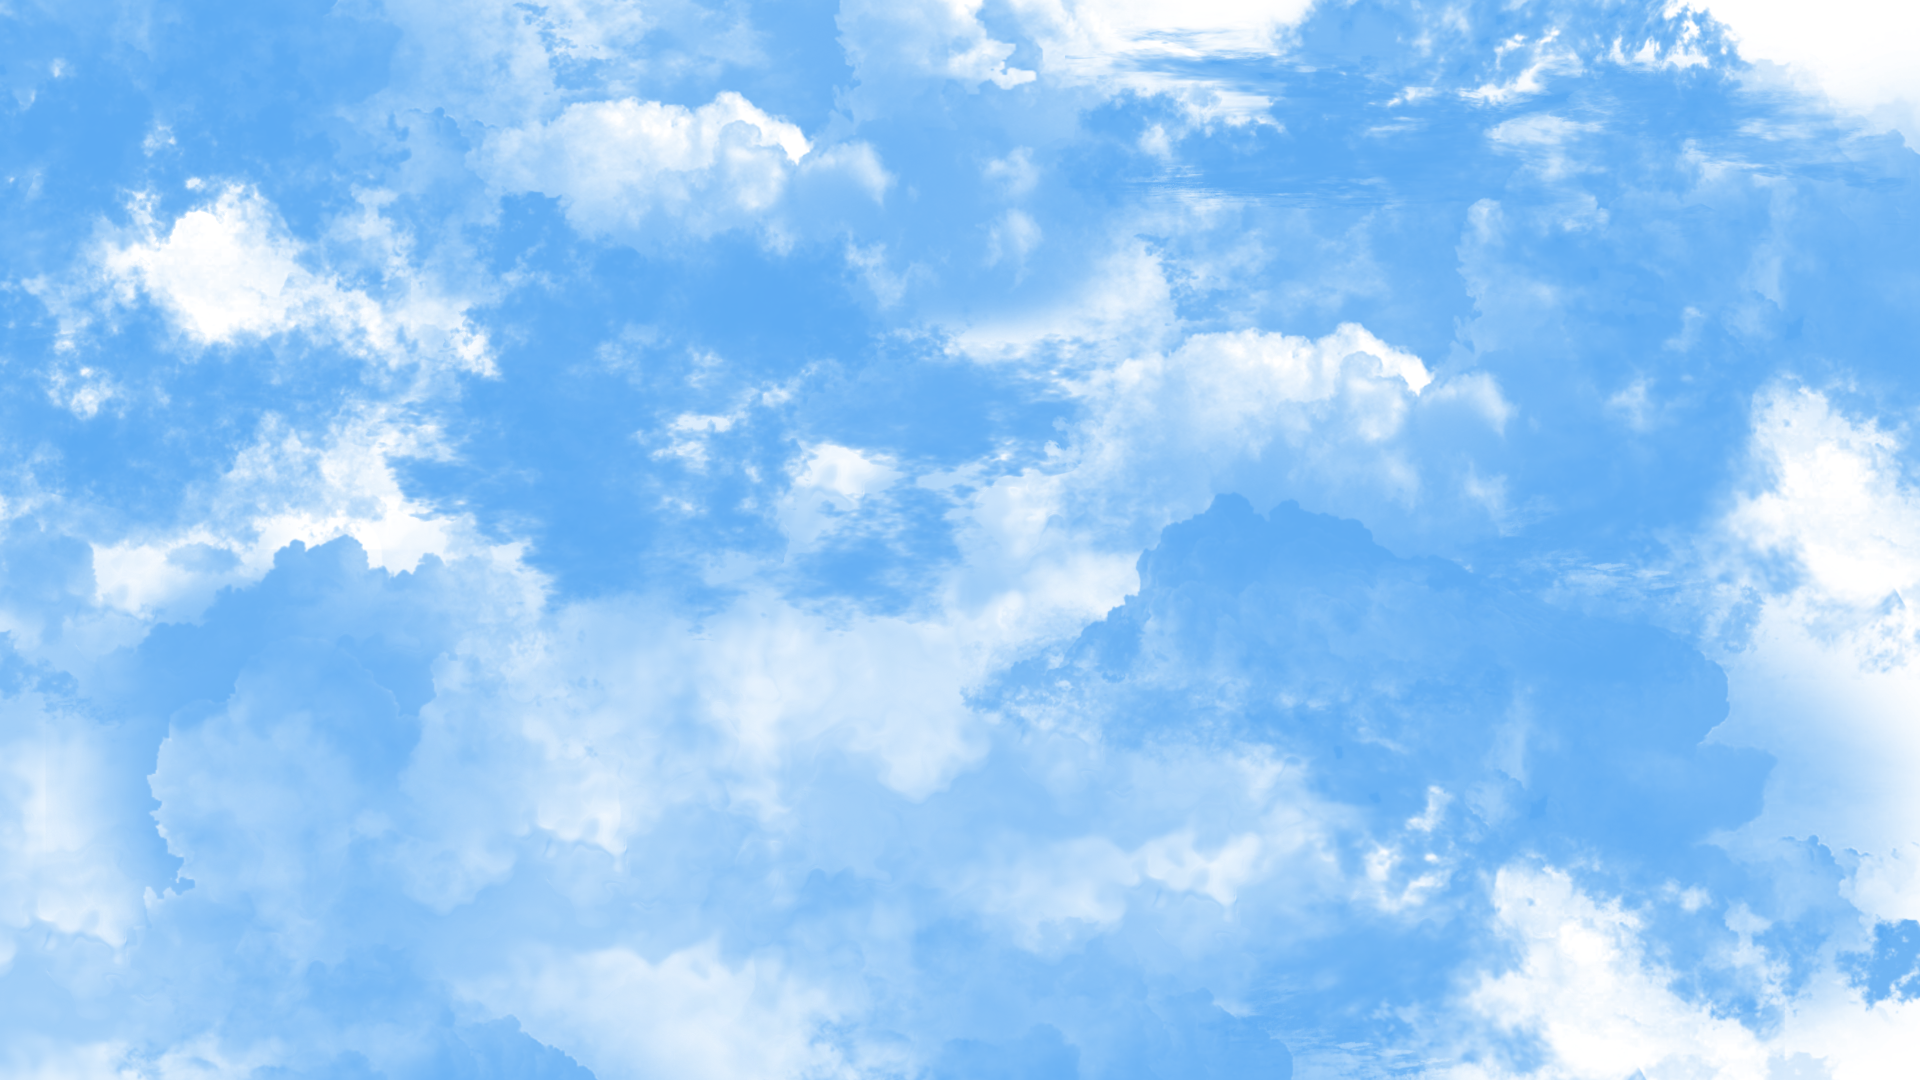 蓝天白云手绘背景图片-蓝天白云手绘背景素材图片-千库网